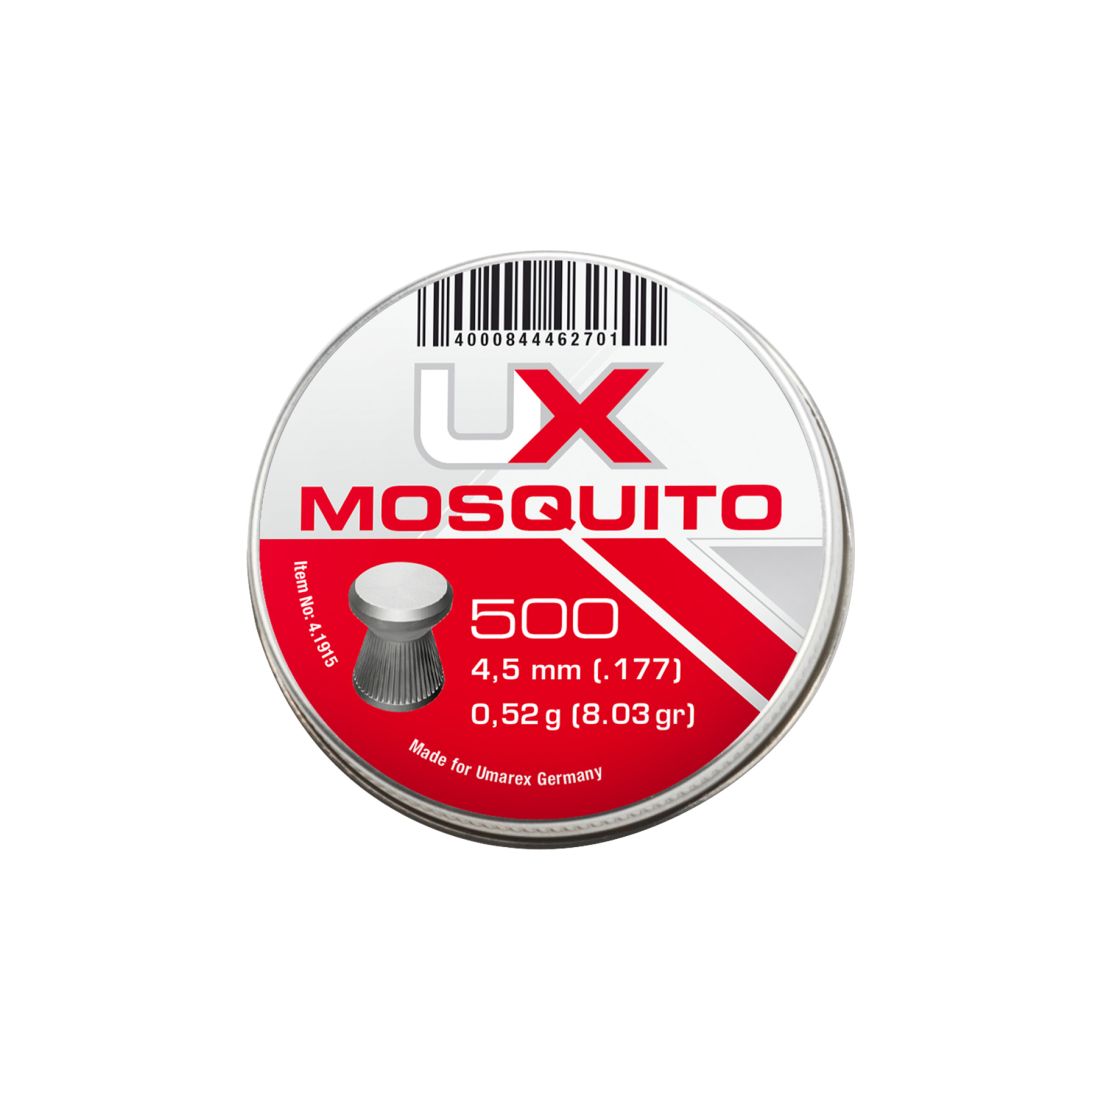 Umarex Mosquito Diabolo Cal. 4,5 mm (.177) 500 Stück